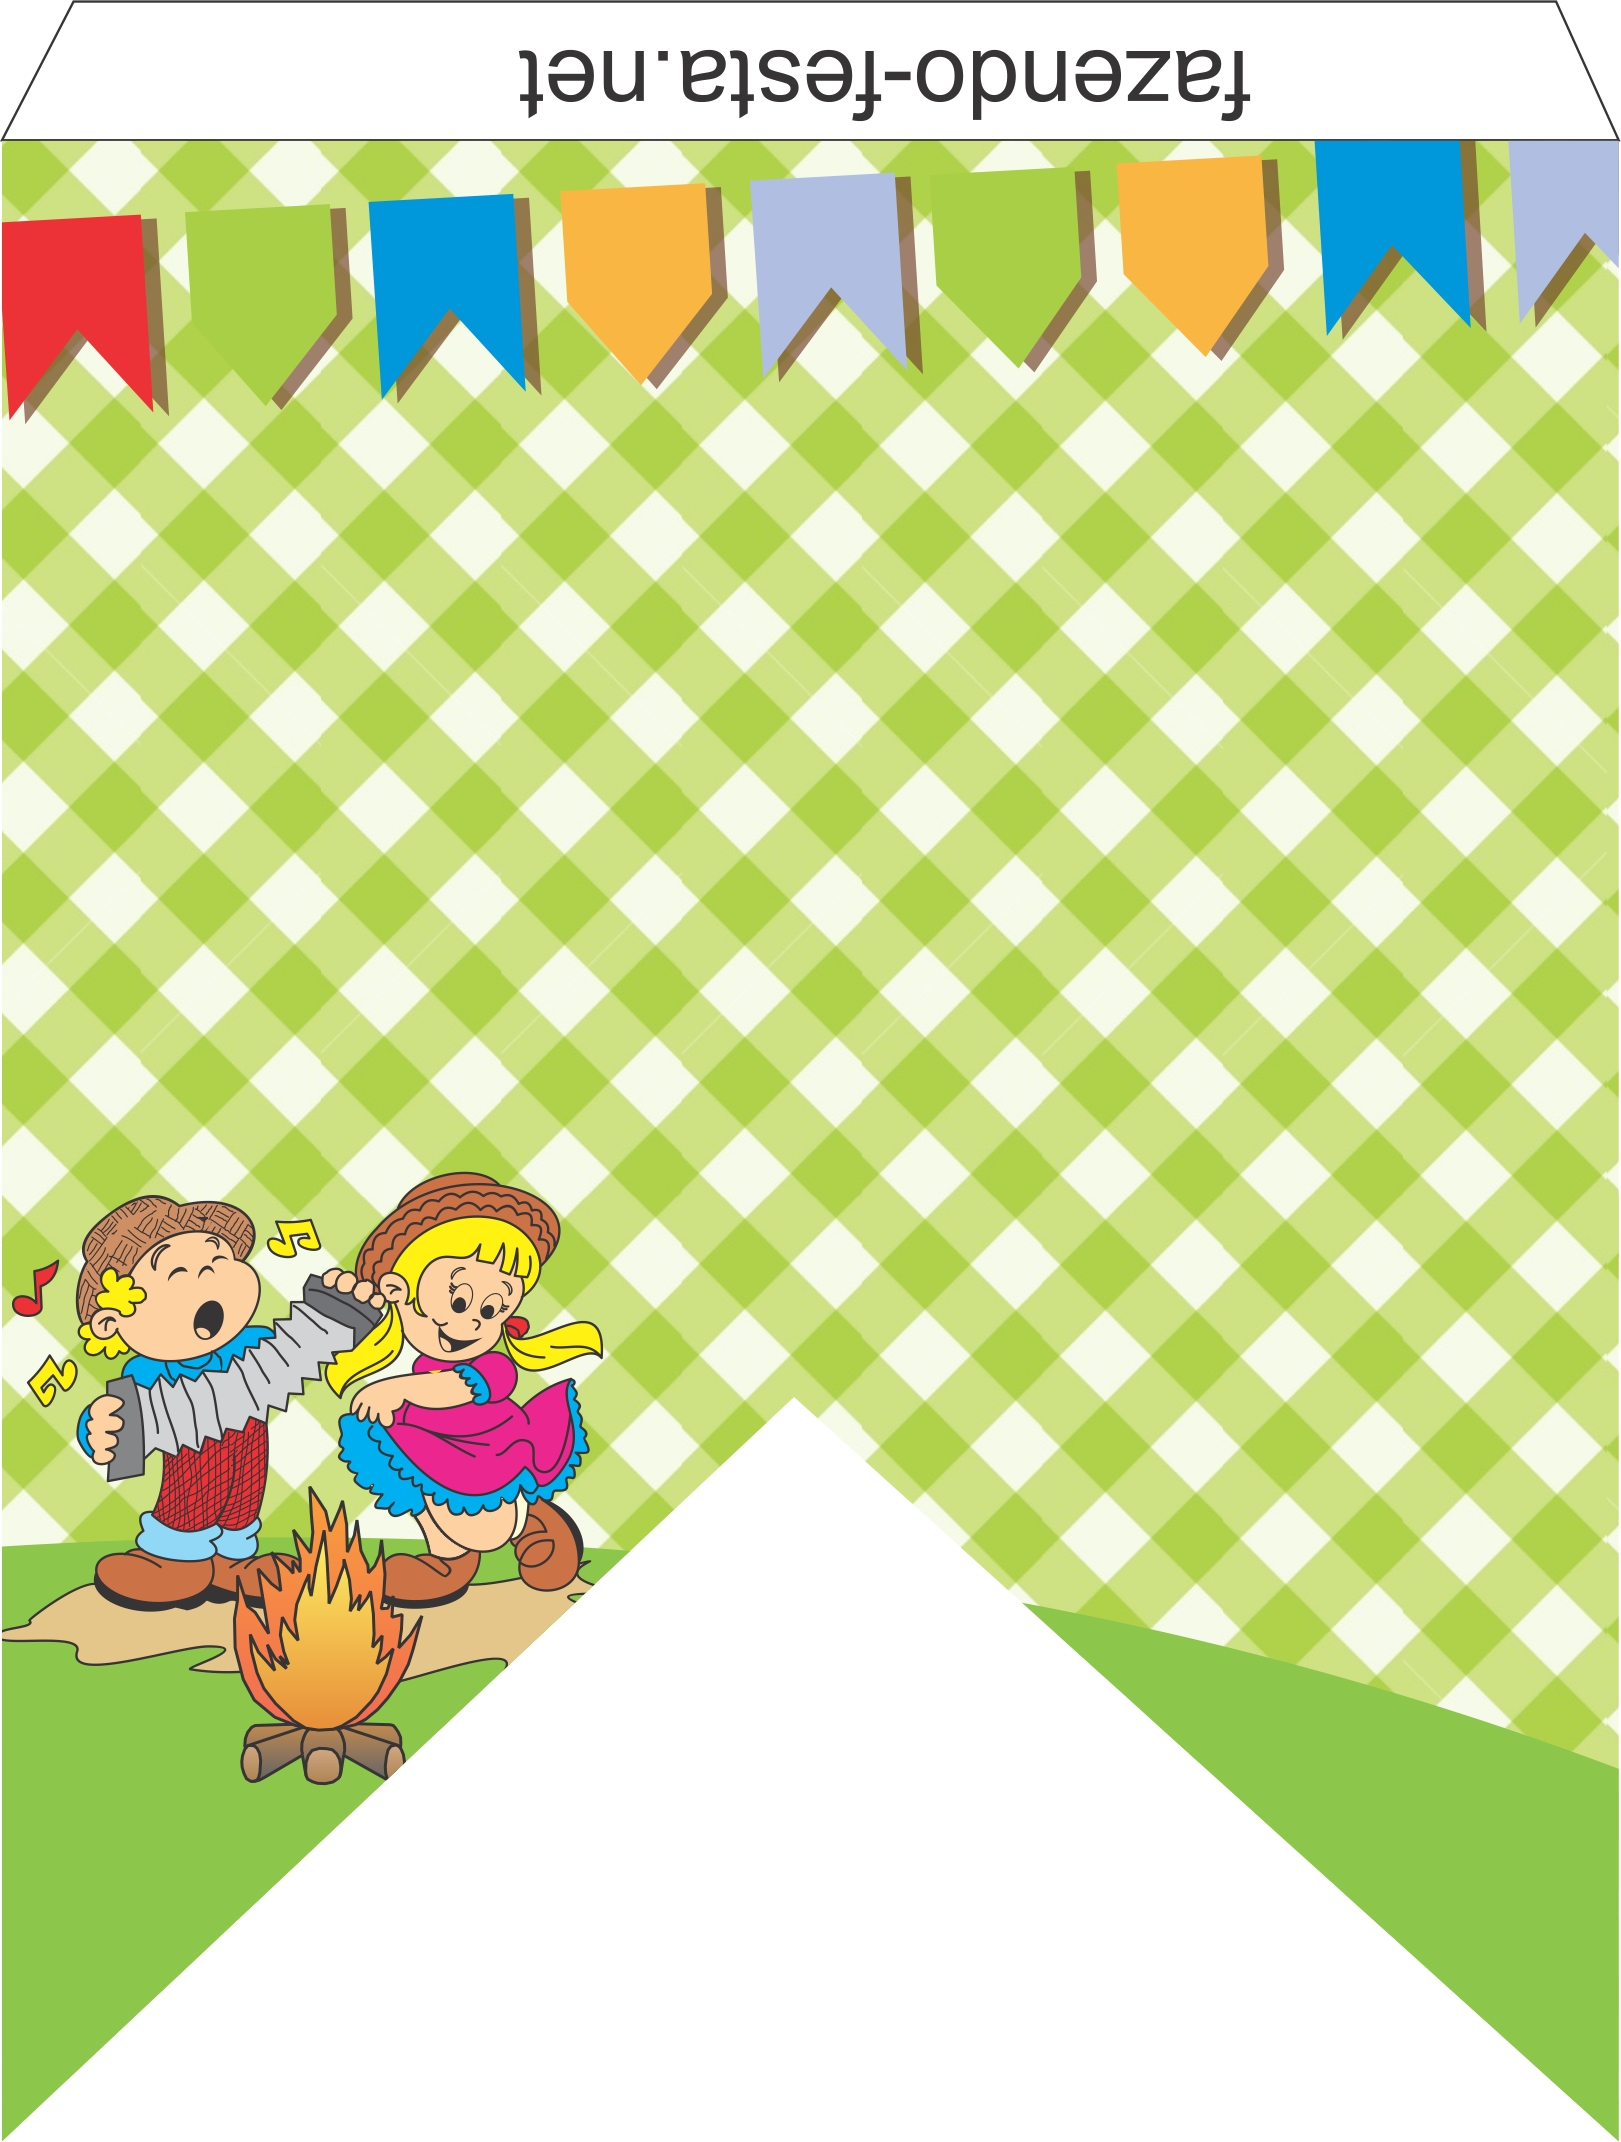 Decoração Festa Junina kit festa para imprimir bandeirinha